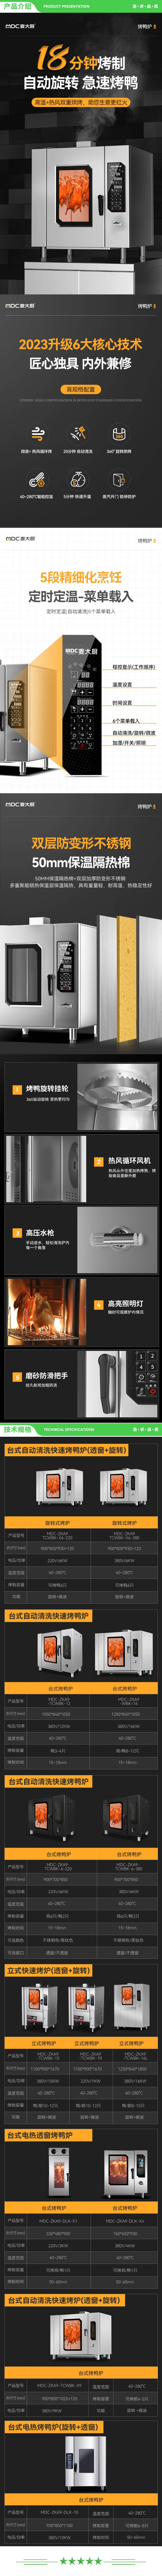 麦大厨 MDC-ZKA9-TCWBK-1R 烤鸭炉商用烤箱全自动大型大容量烧腊烤鸡排骨叉烧多功能旋转燃气 2.jpg